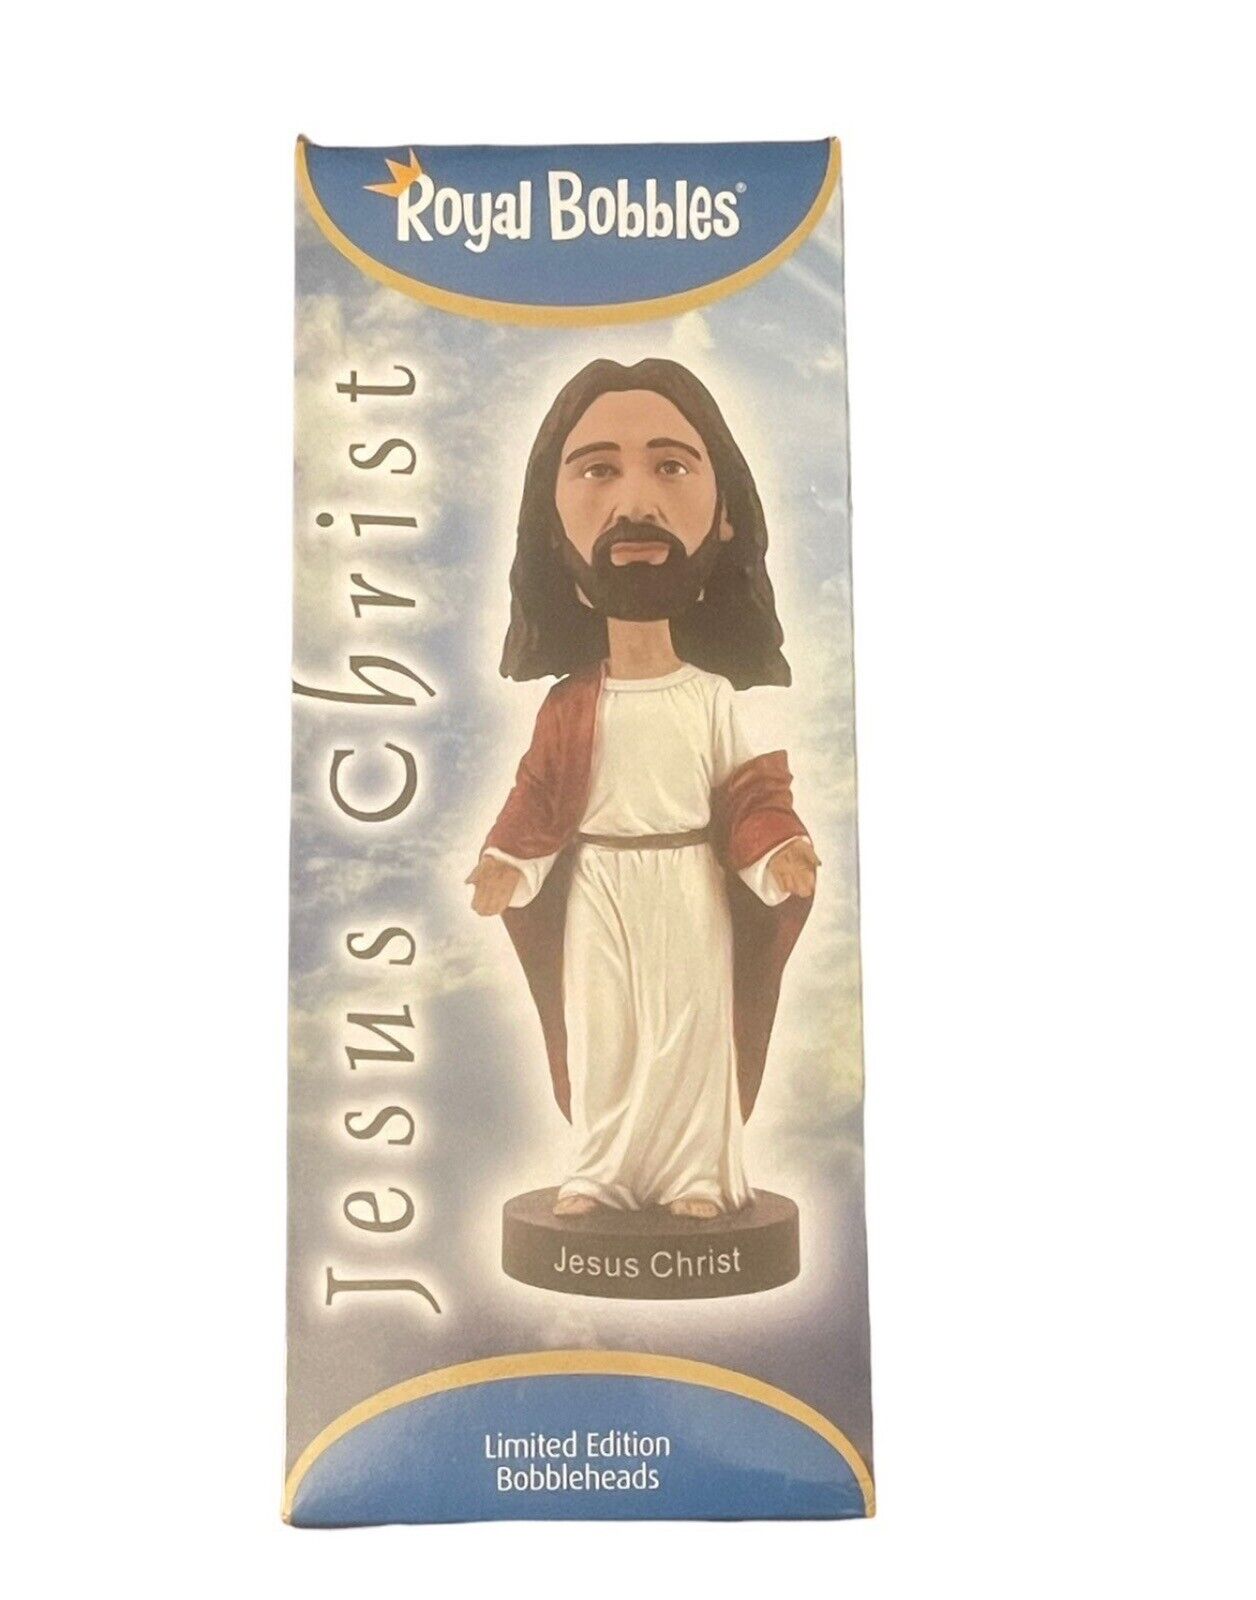 Royal Bobbles Jesus Christ Bobbleheads